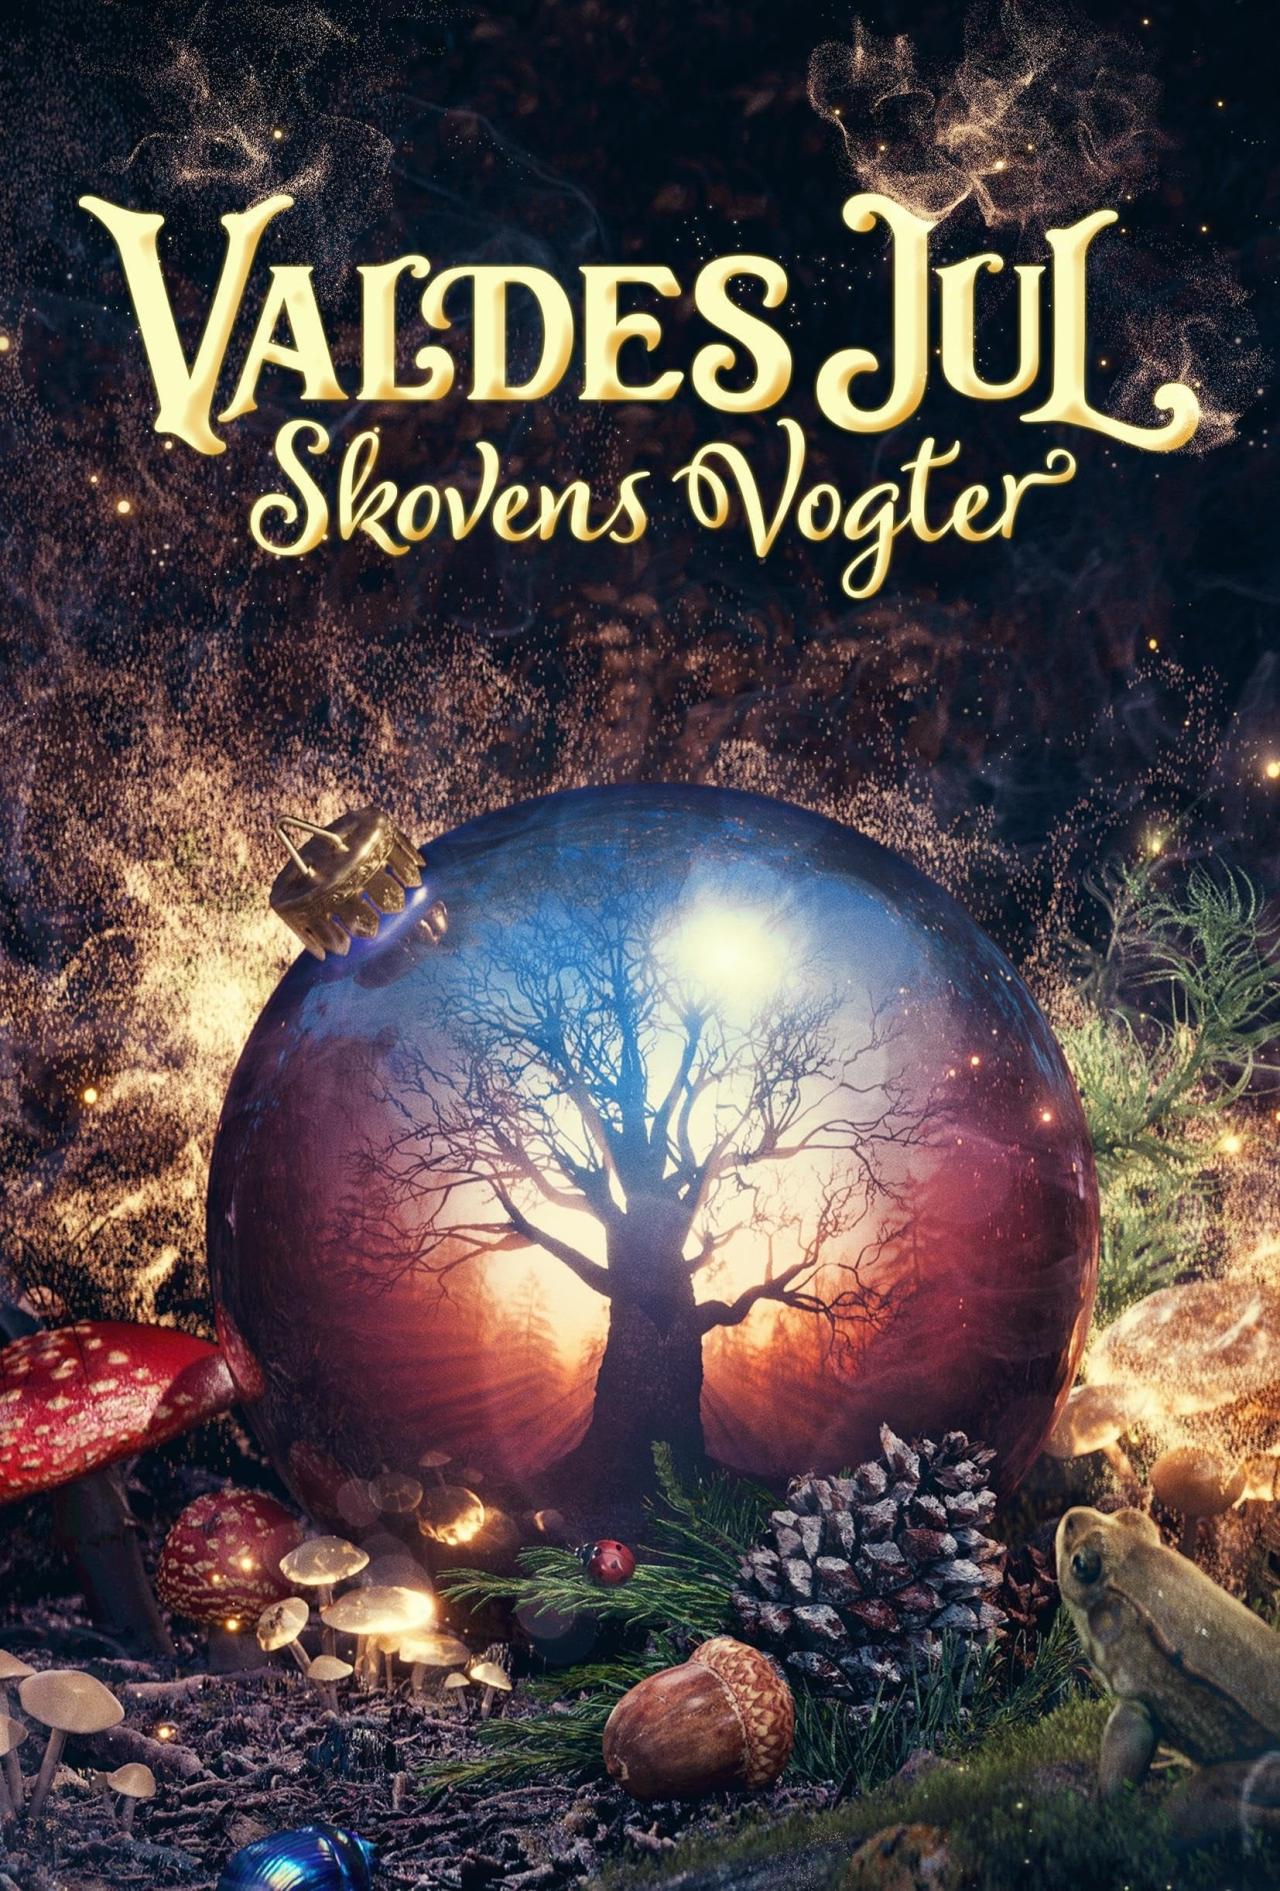 Les saisons de Valdes Jul - Skovens Vogter sont-elles disponibles sur Netflix ou autre ?